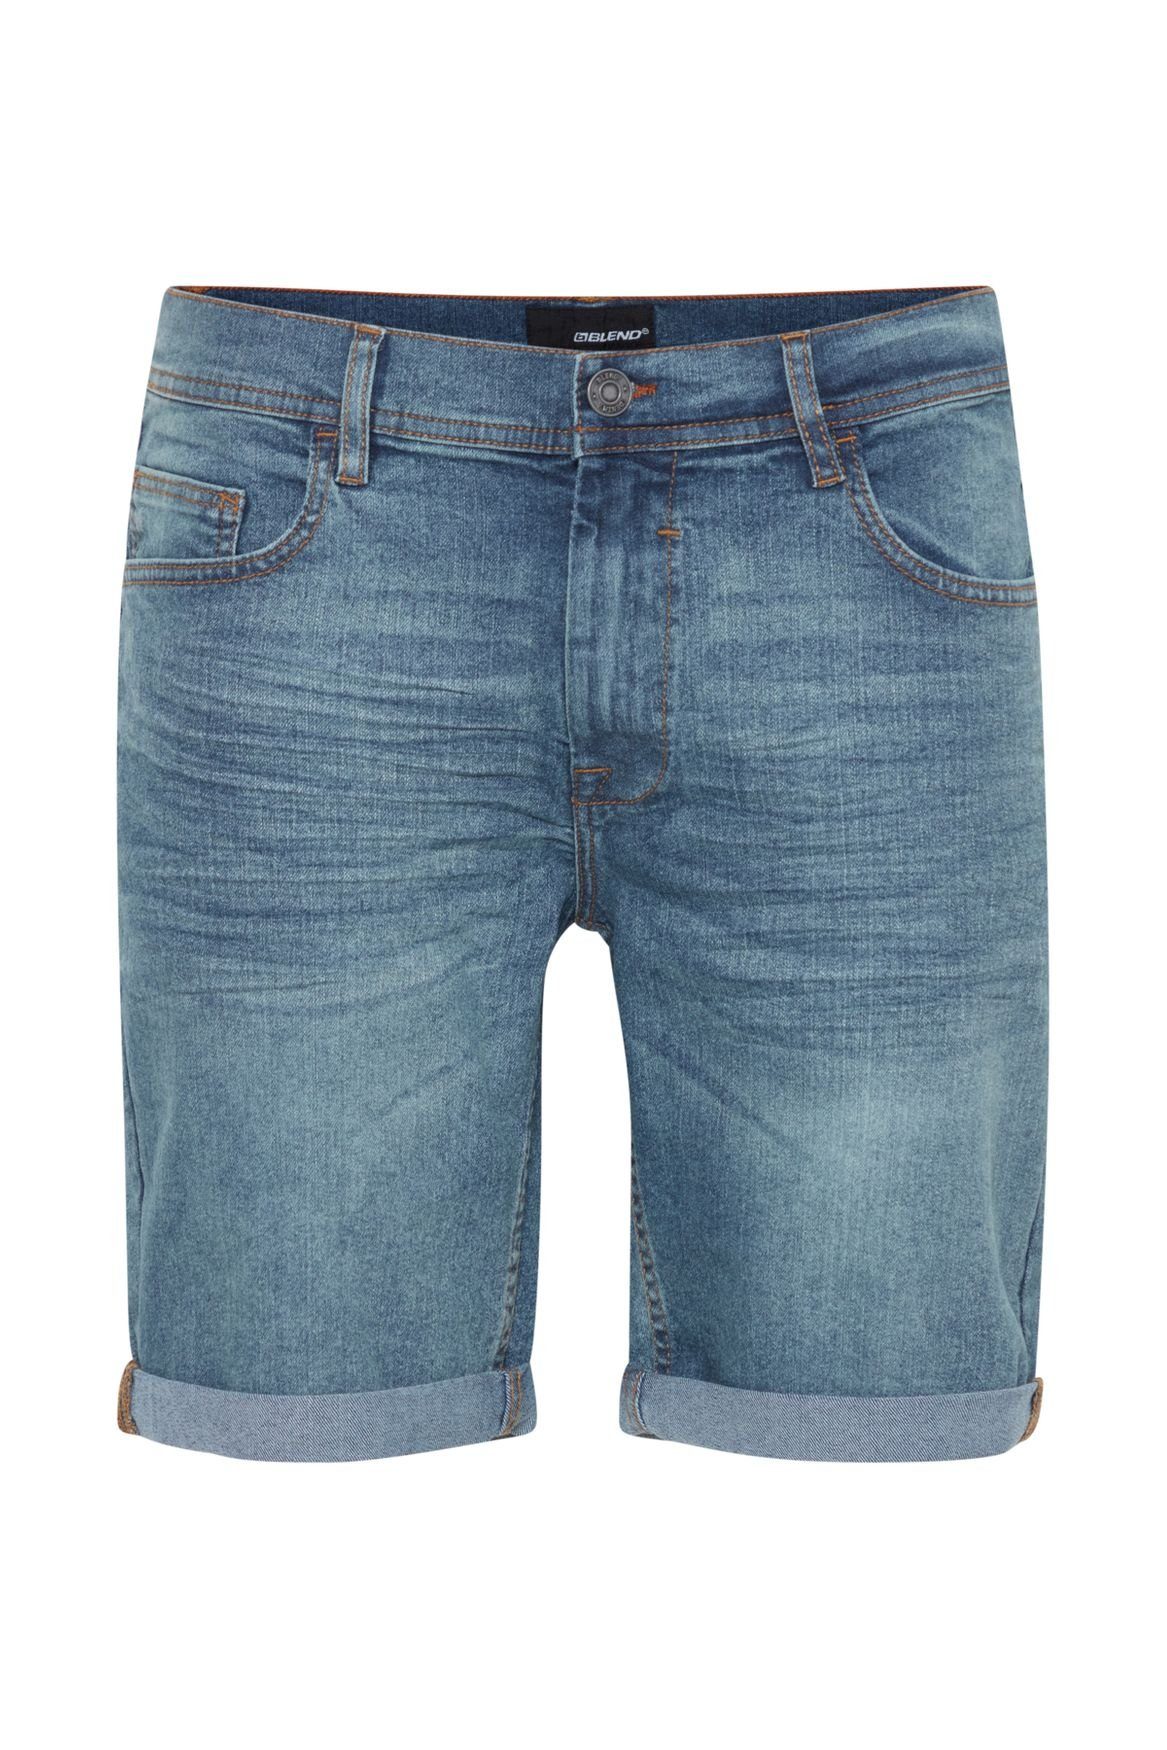 Blend Jeansshorts Denim Capri Jeans Shorts 3/4 Bermuda Hose 5087 in Blau